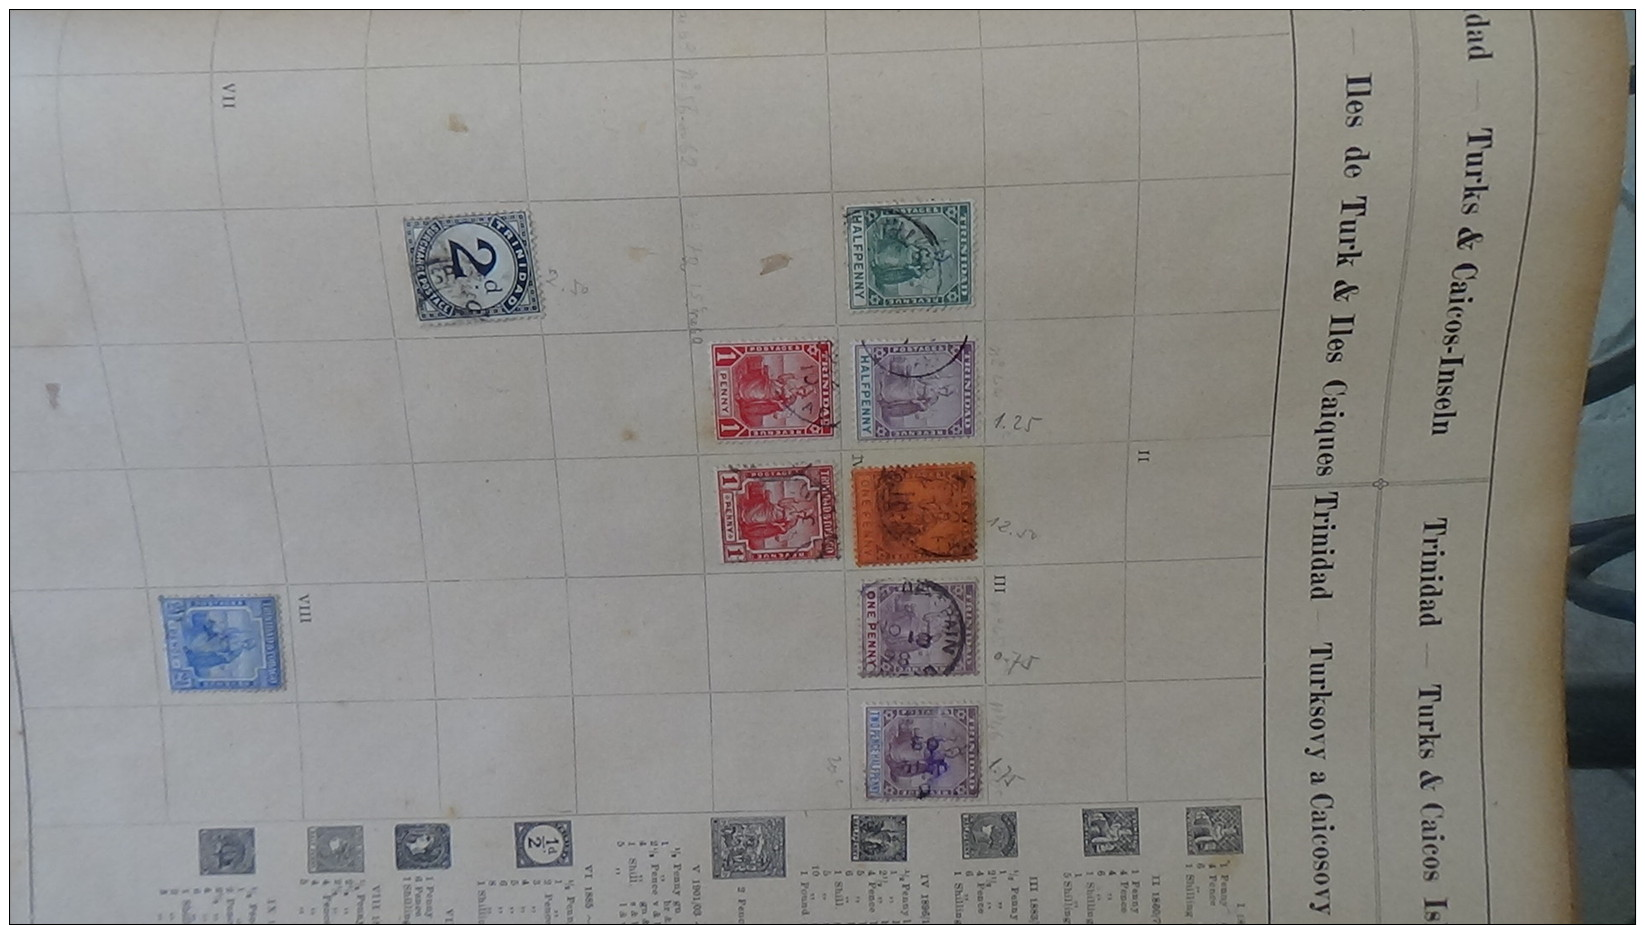 1er timbres de quelques pays du monde sur feuilles d'album. A saisir !!!